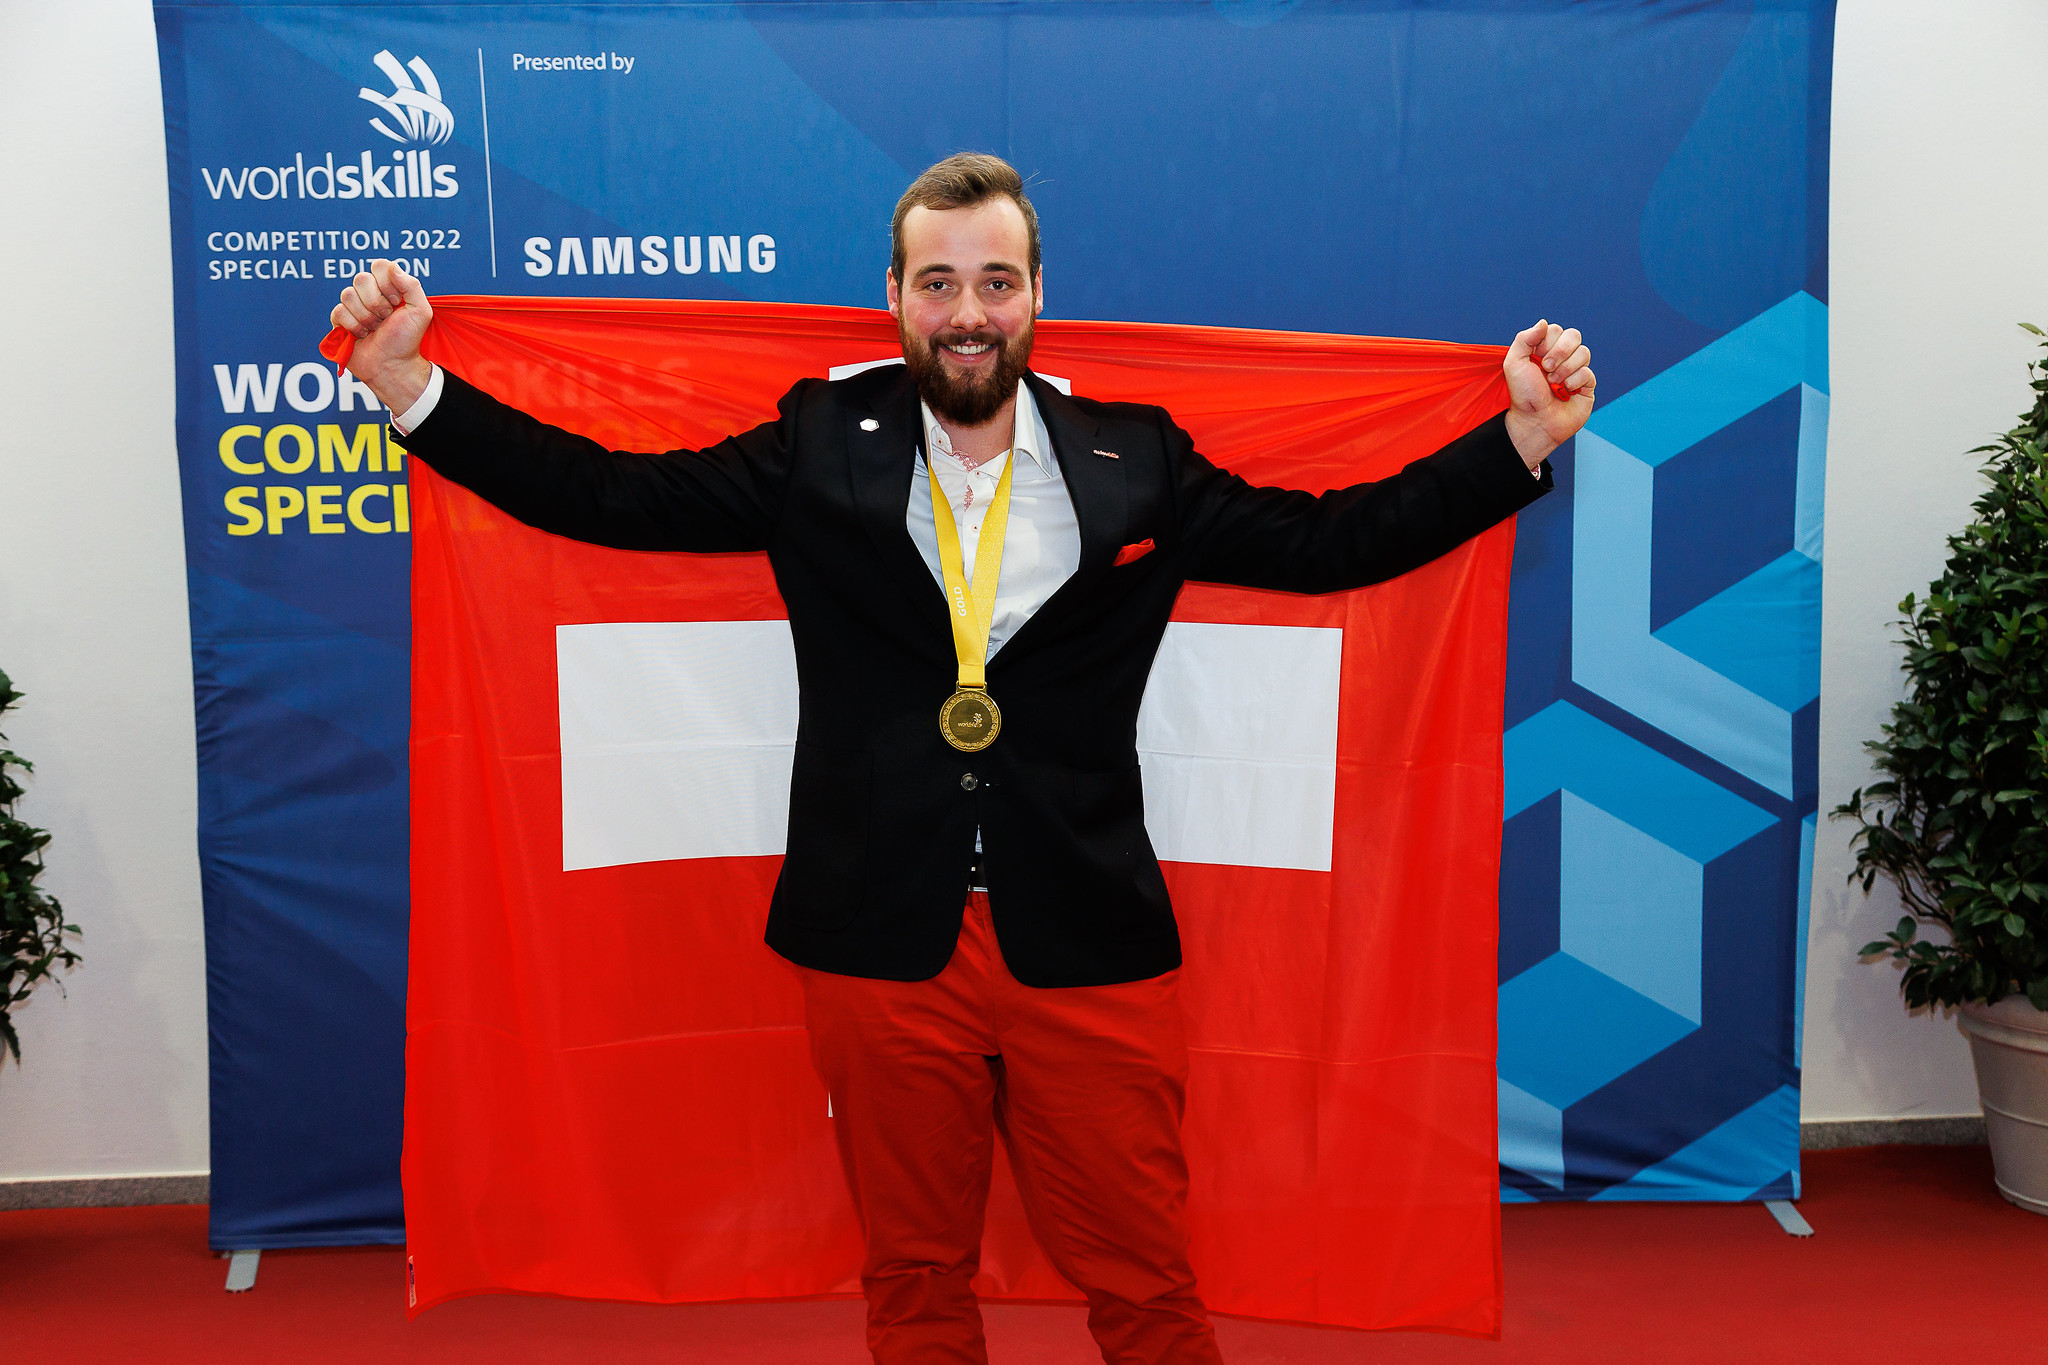 技能五輪国際大会のザルツブルグ会場で行われた最終競技の1つ、レンガ積みで金メダルを獲得したベン・ザウグさん